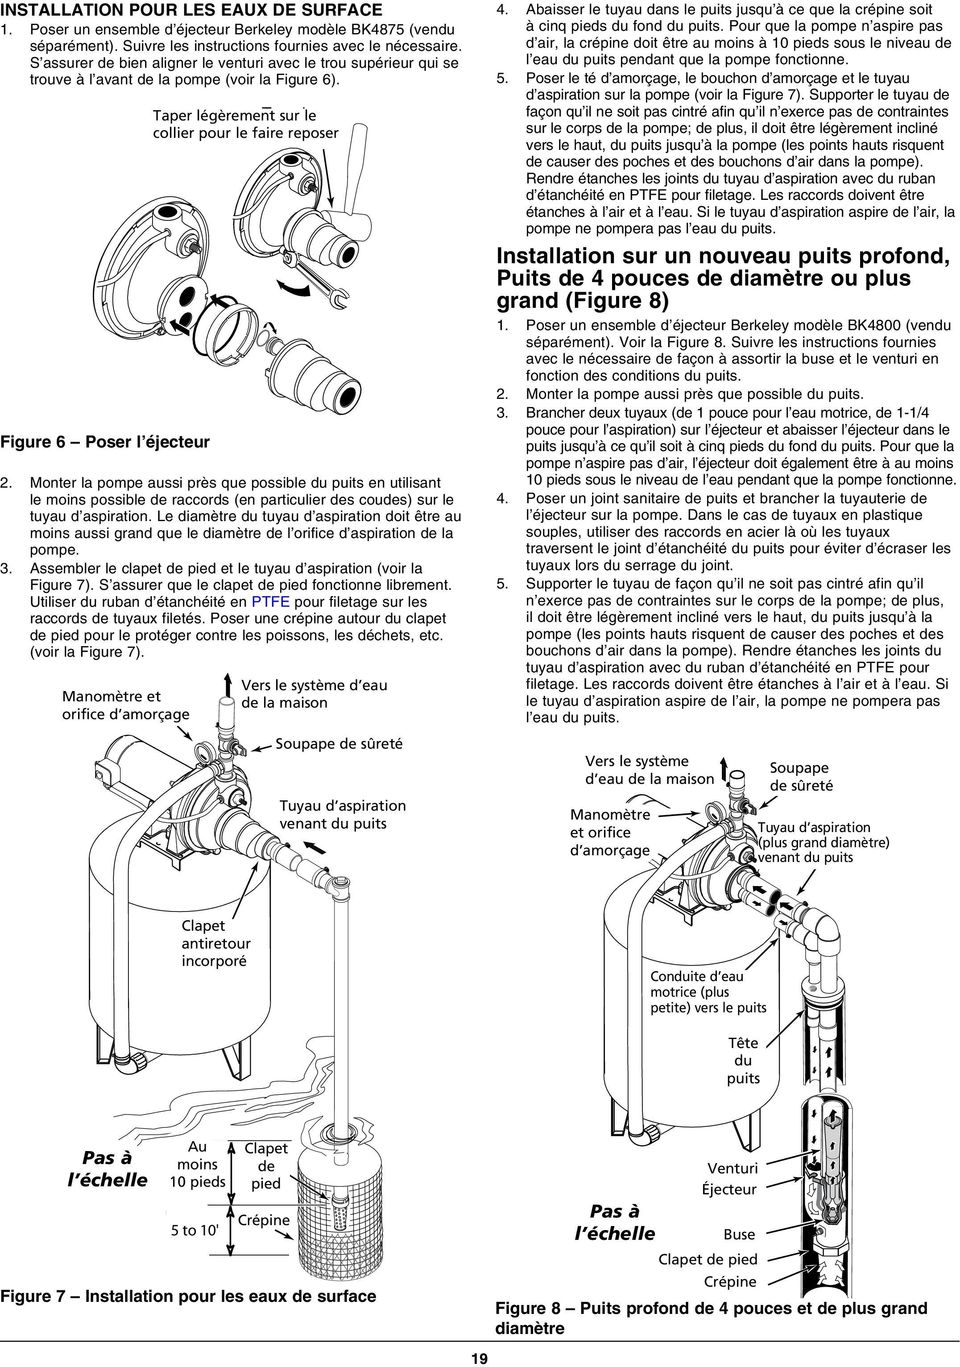 Monter la pompe aussi près que possible du puits en utilisant le moins possible de raccords (en particulier des coudes) sur le tuyau d aspiration.